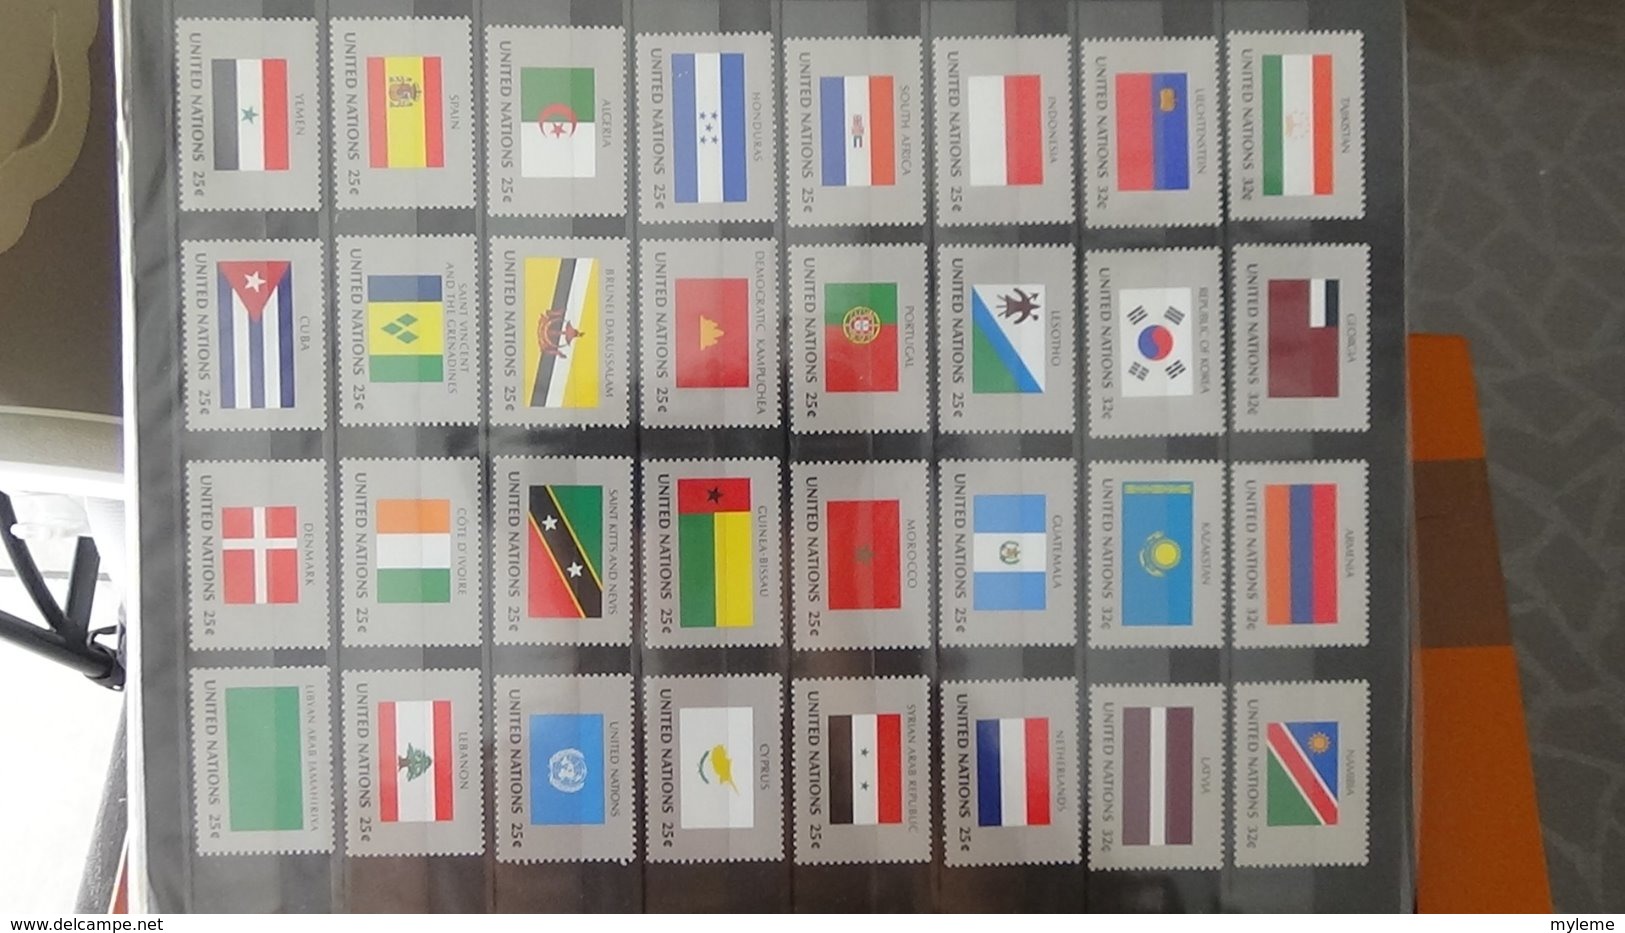 Belle collection des Nations UNies en timbres et blocs  **. A saisir !!!